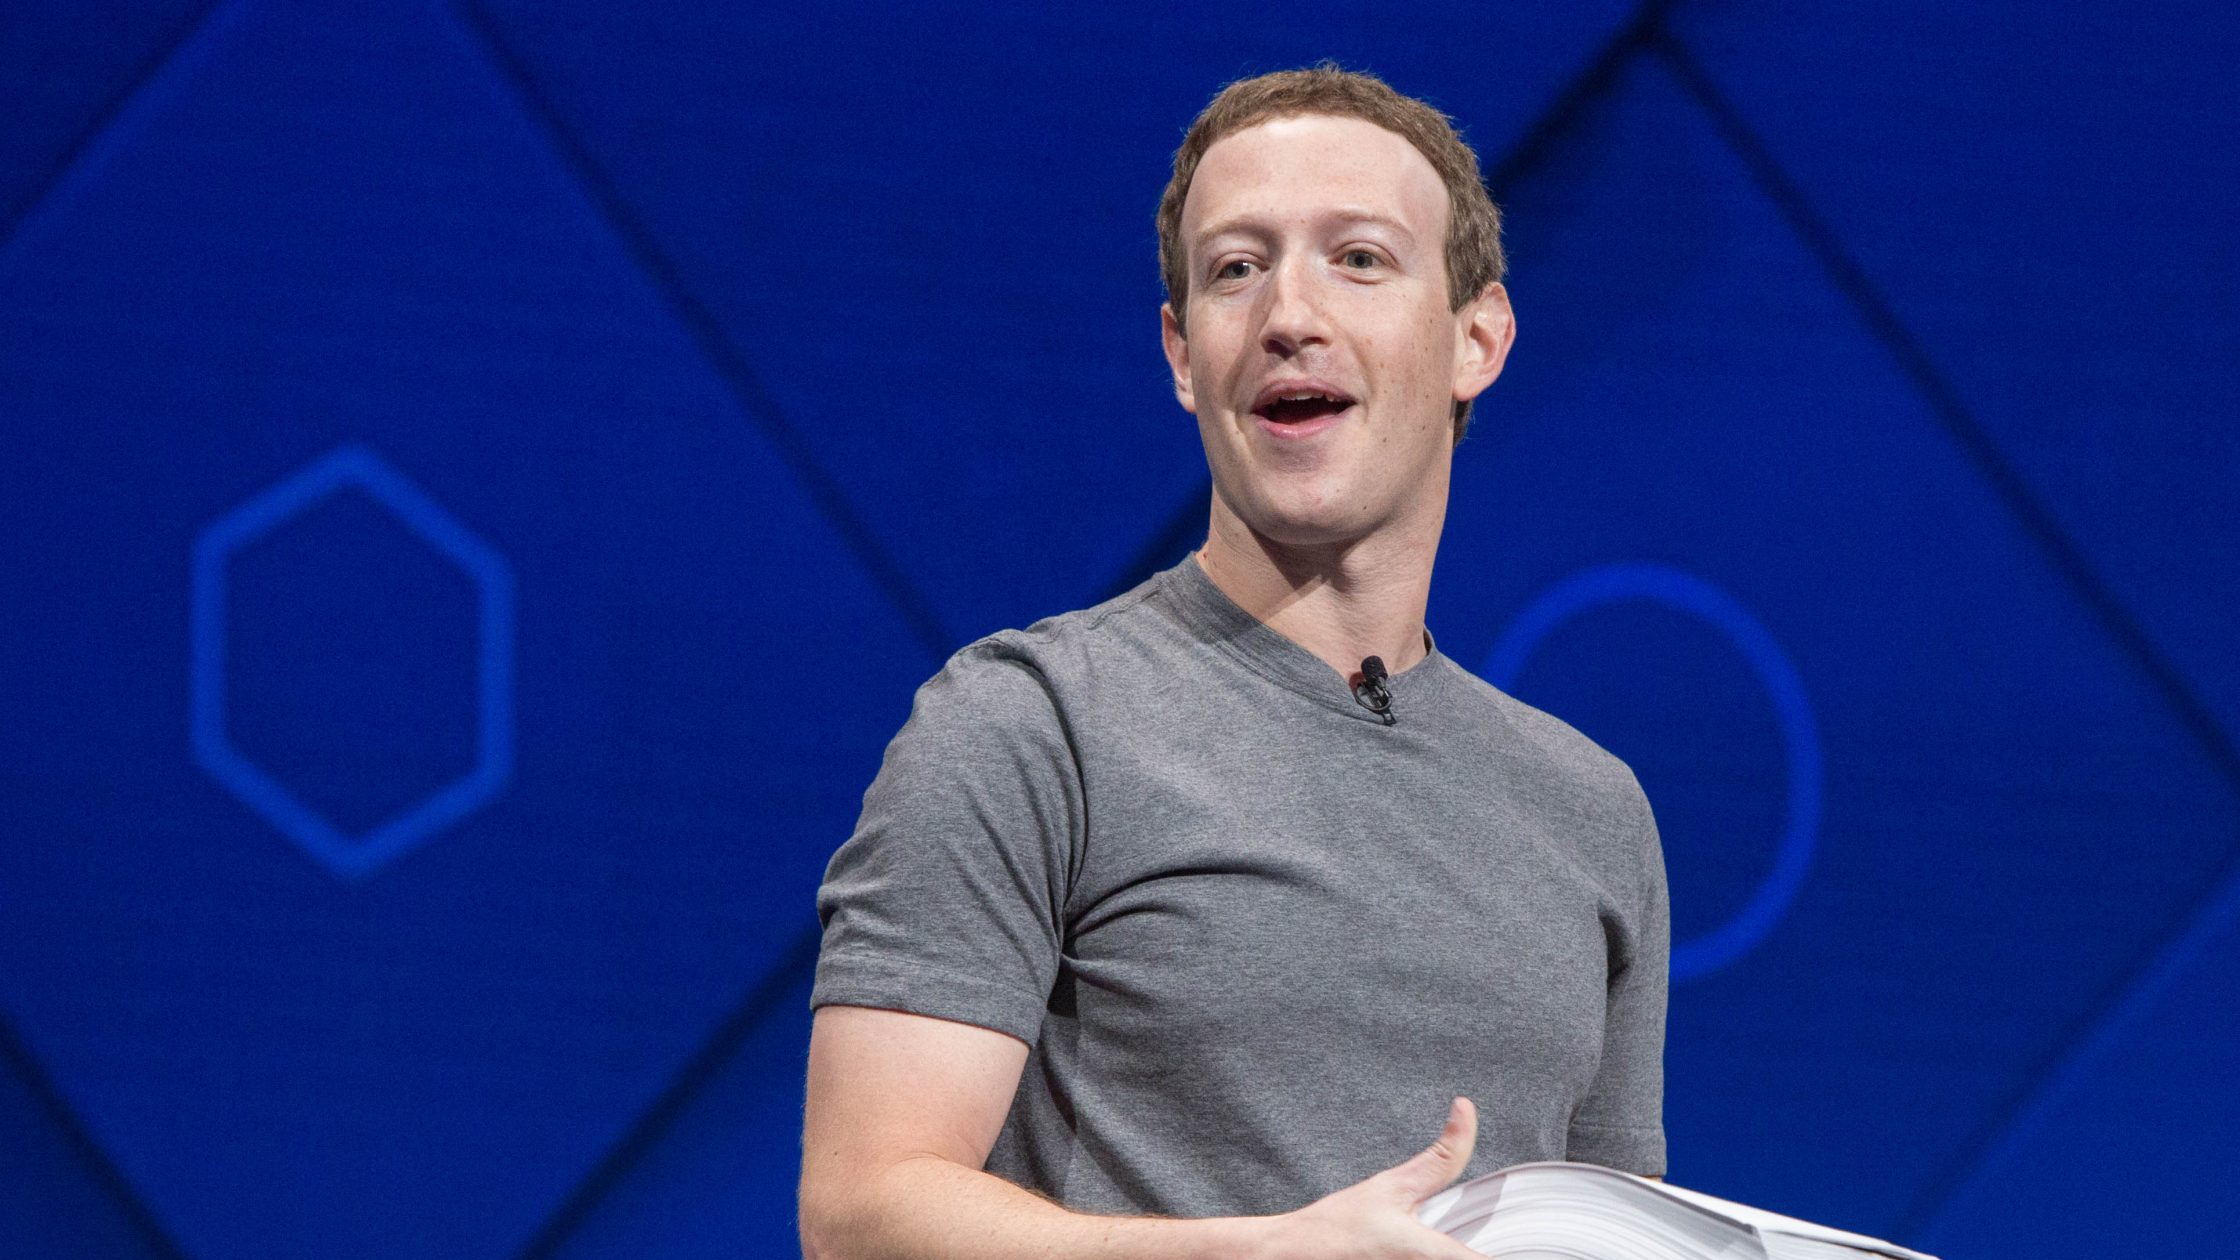 Zuckerberg promete melhorar visual do metaverso após ser zoado — mas não  disse nada sobre os avatares sem pernas - Seu Dinheiro